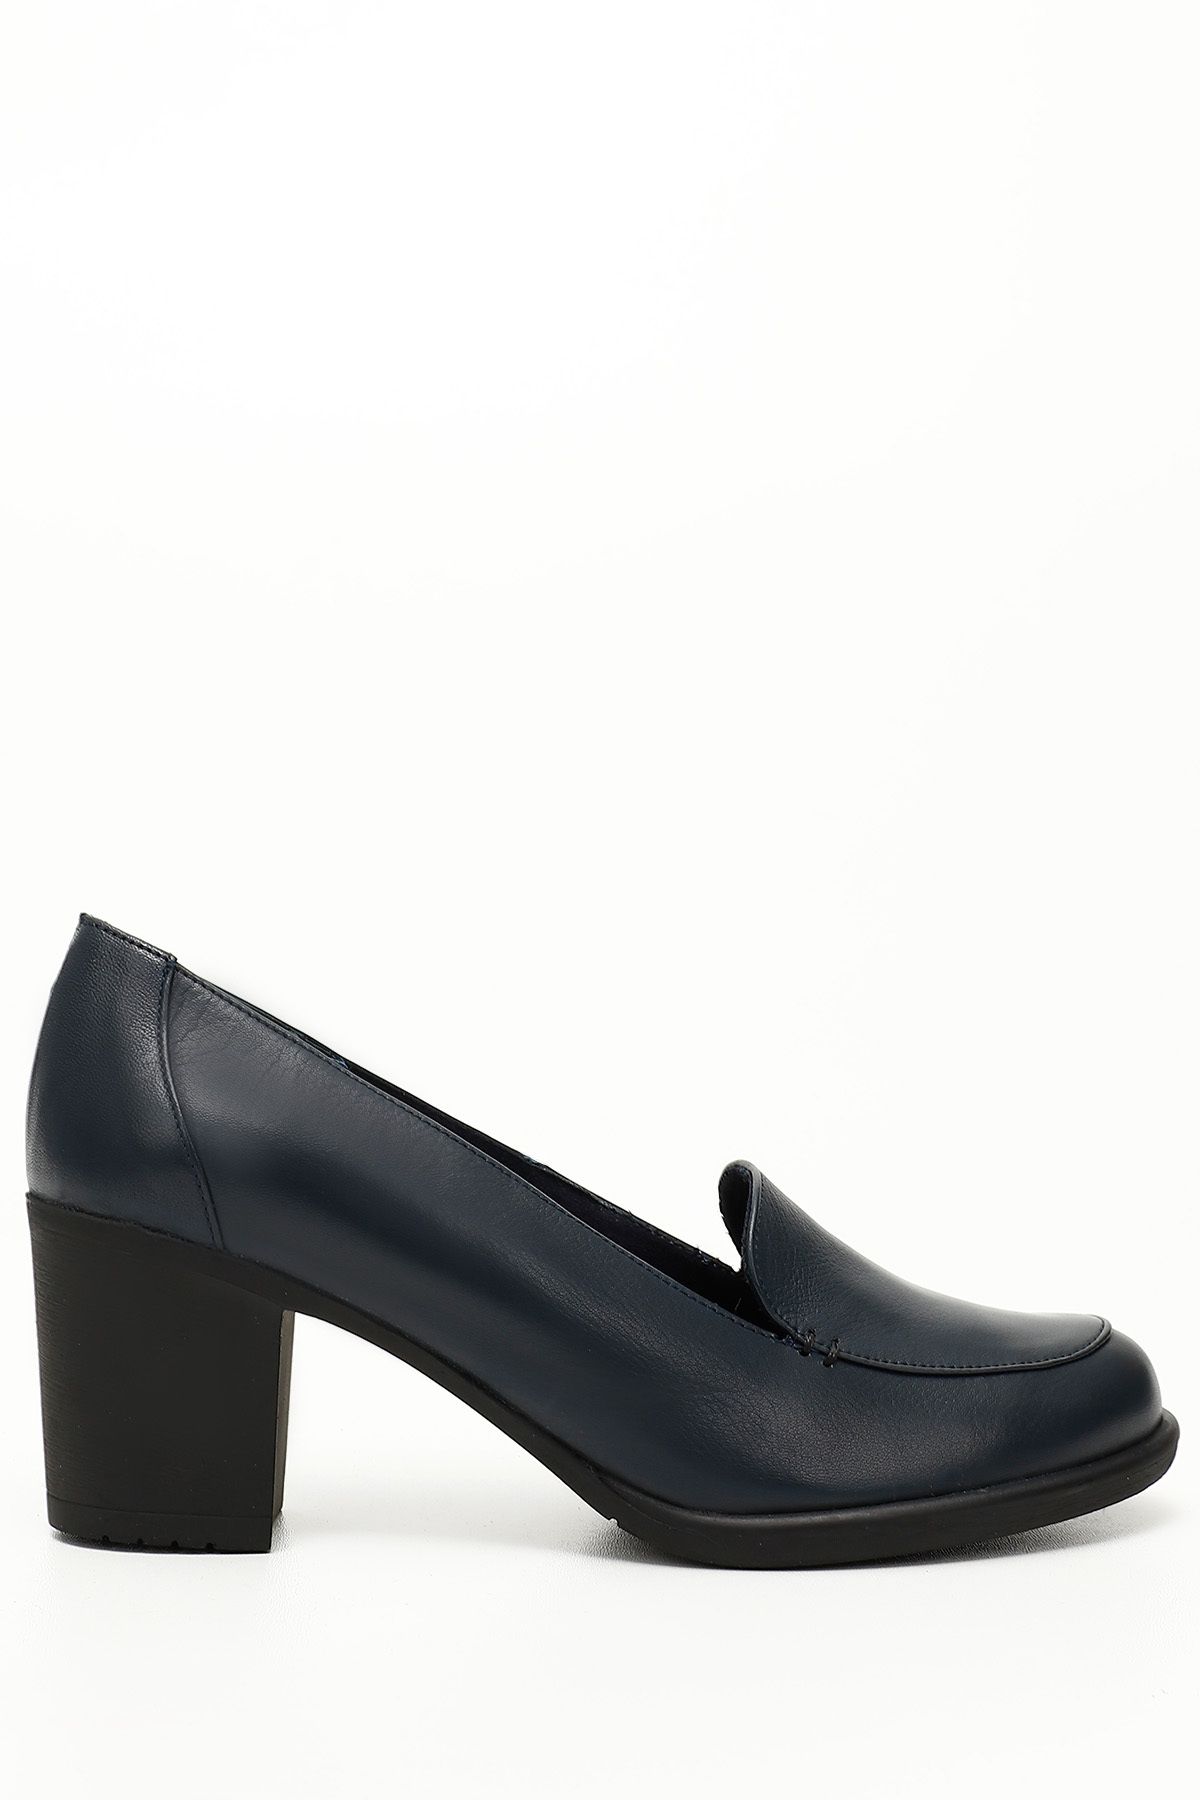 GÖNDERİ(R) Lacivert Antik Gön Hakiki Deri Yuvarlak Burun Kalın Topuklu Kauçuk Taban Kadın Loafer Ayakkabı 24070